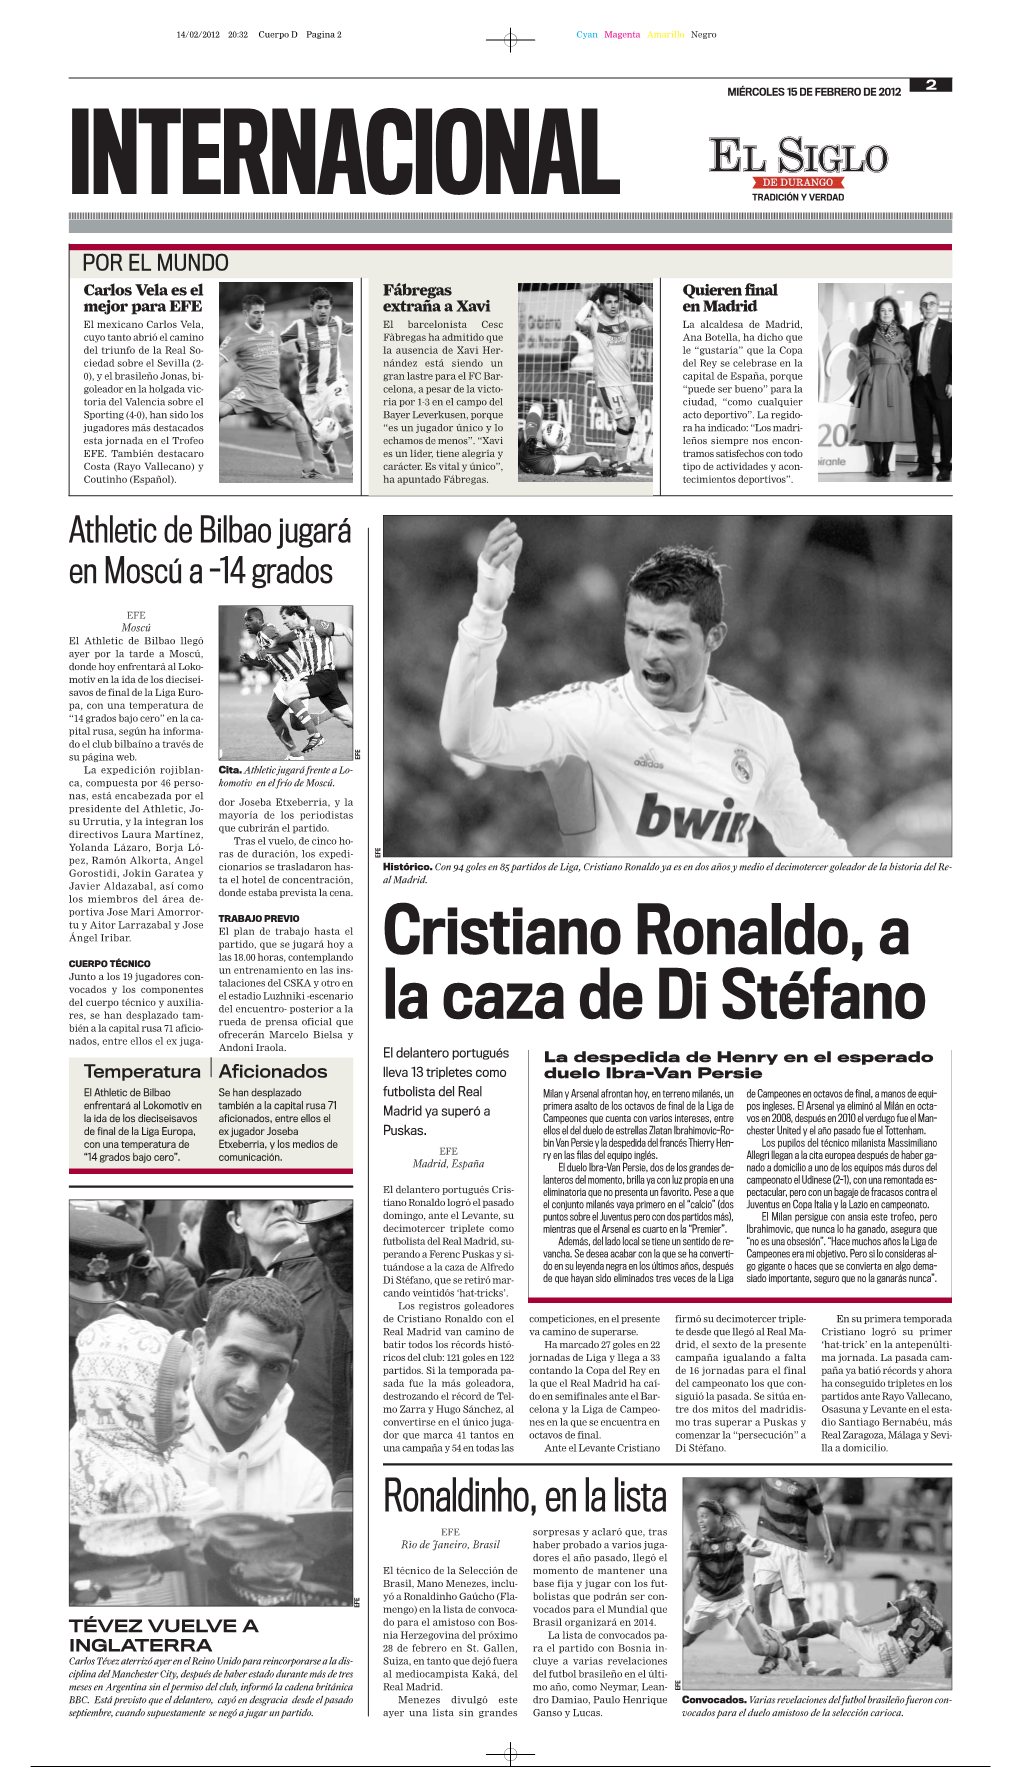 Cristiano Ronaldo, a La Caza De Di Stéfano